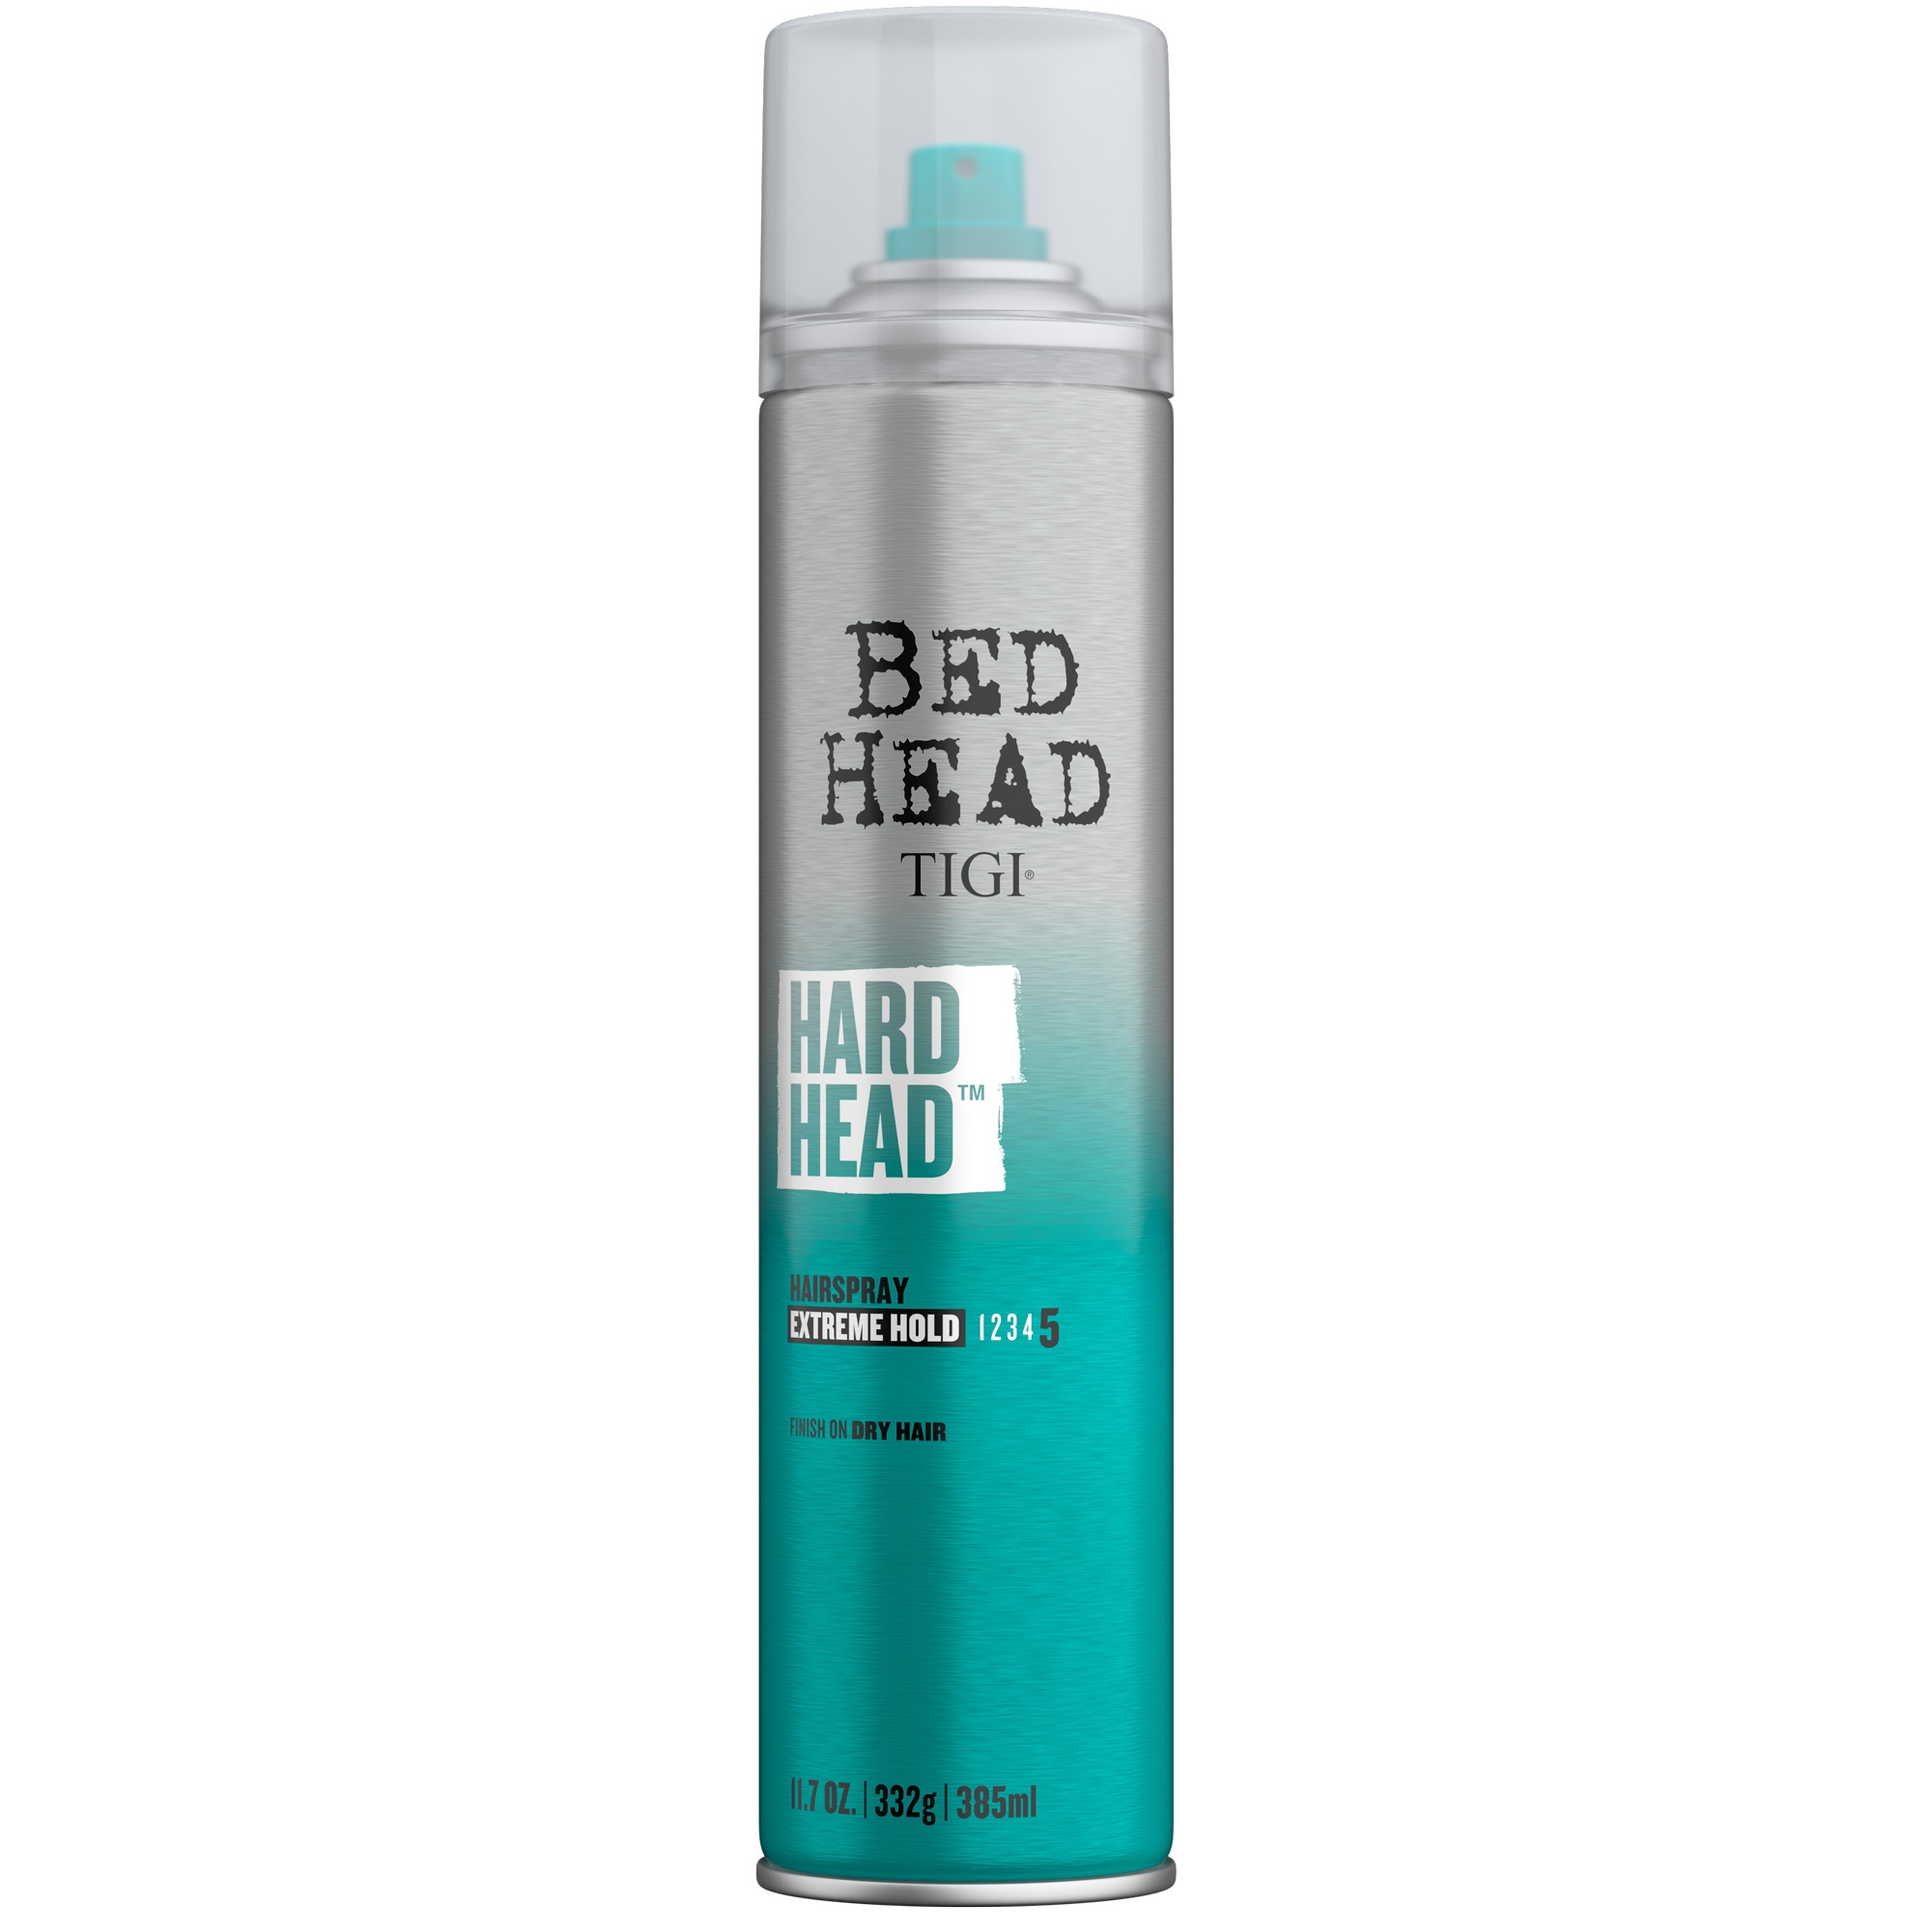 TIGI BED HEAD: Hard Head Hairspray 11.7oz